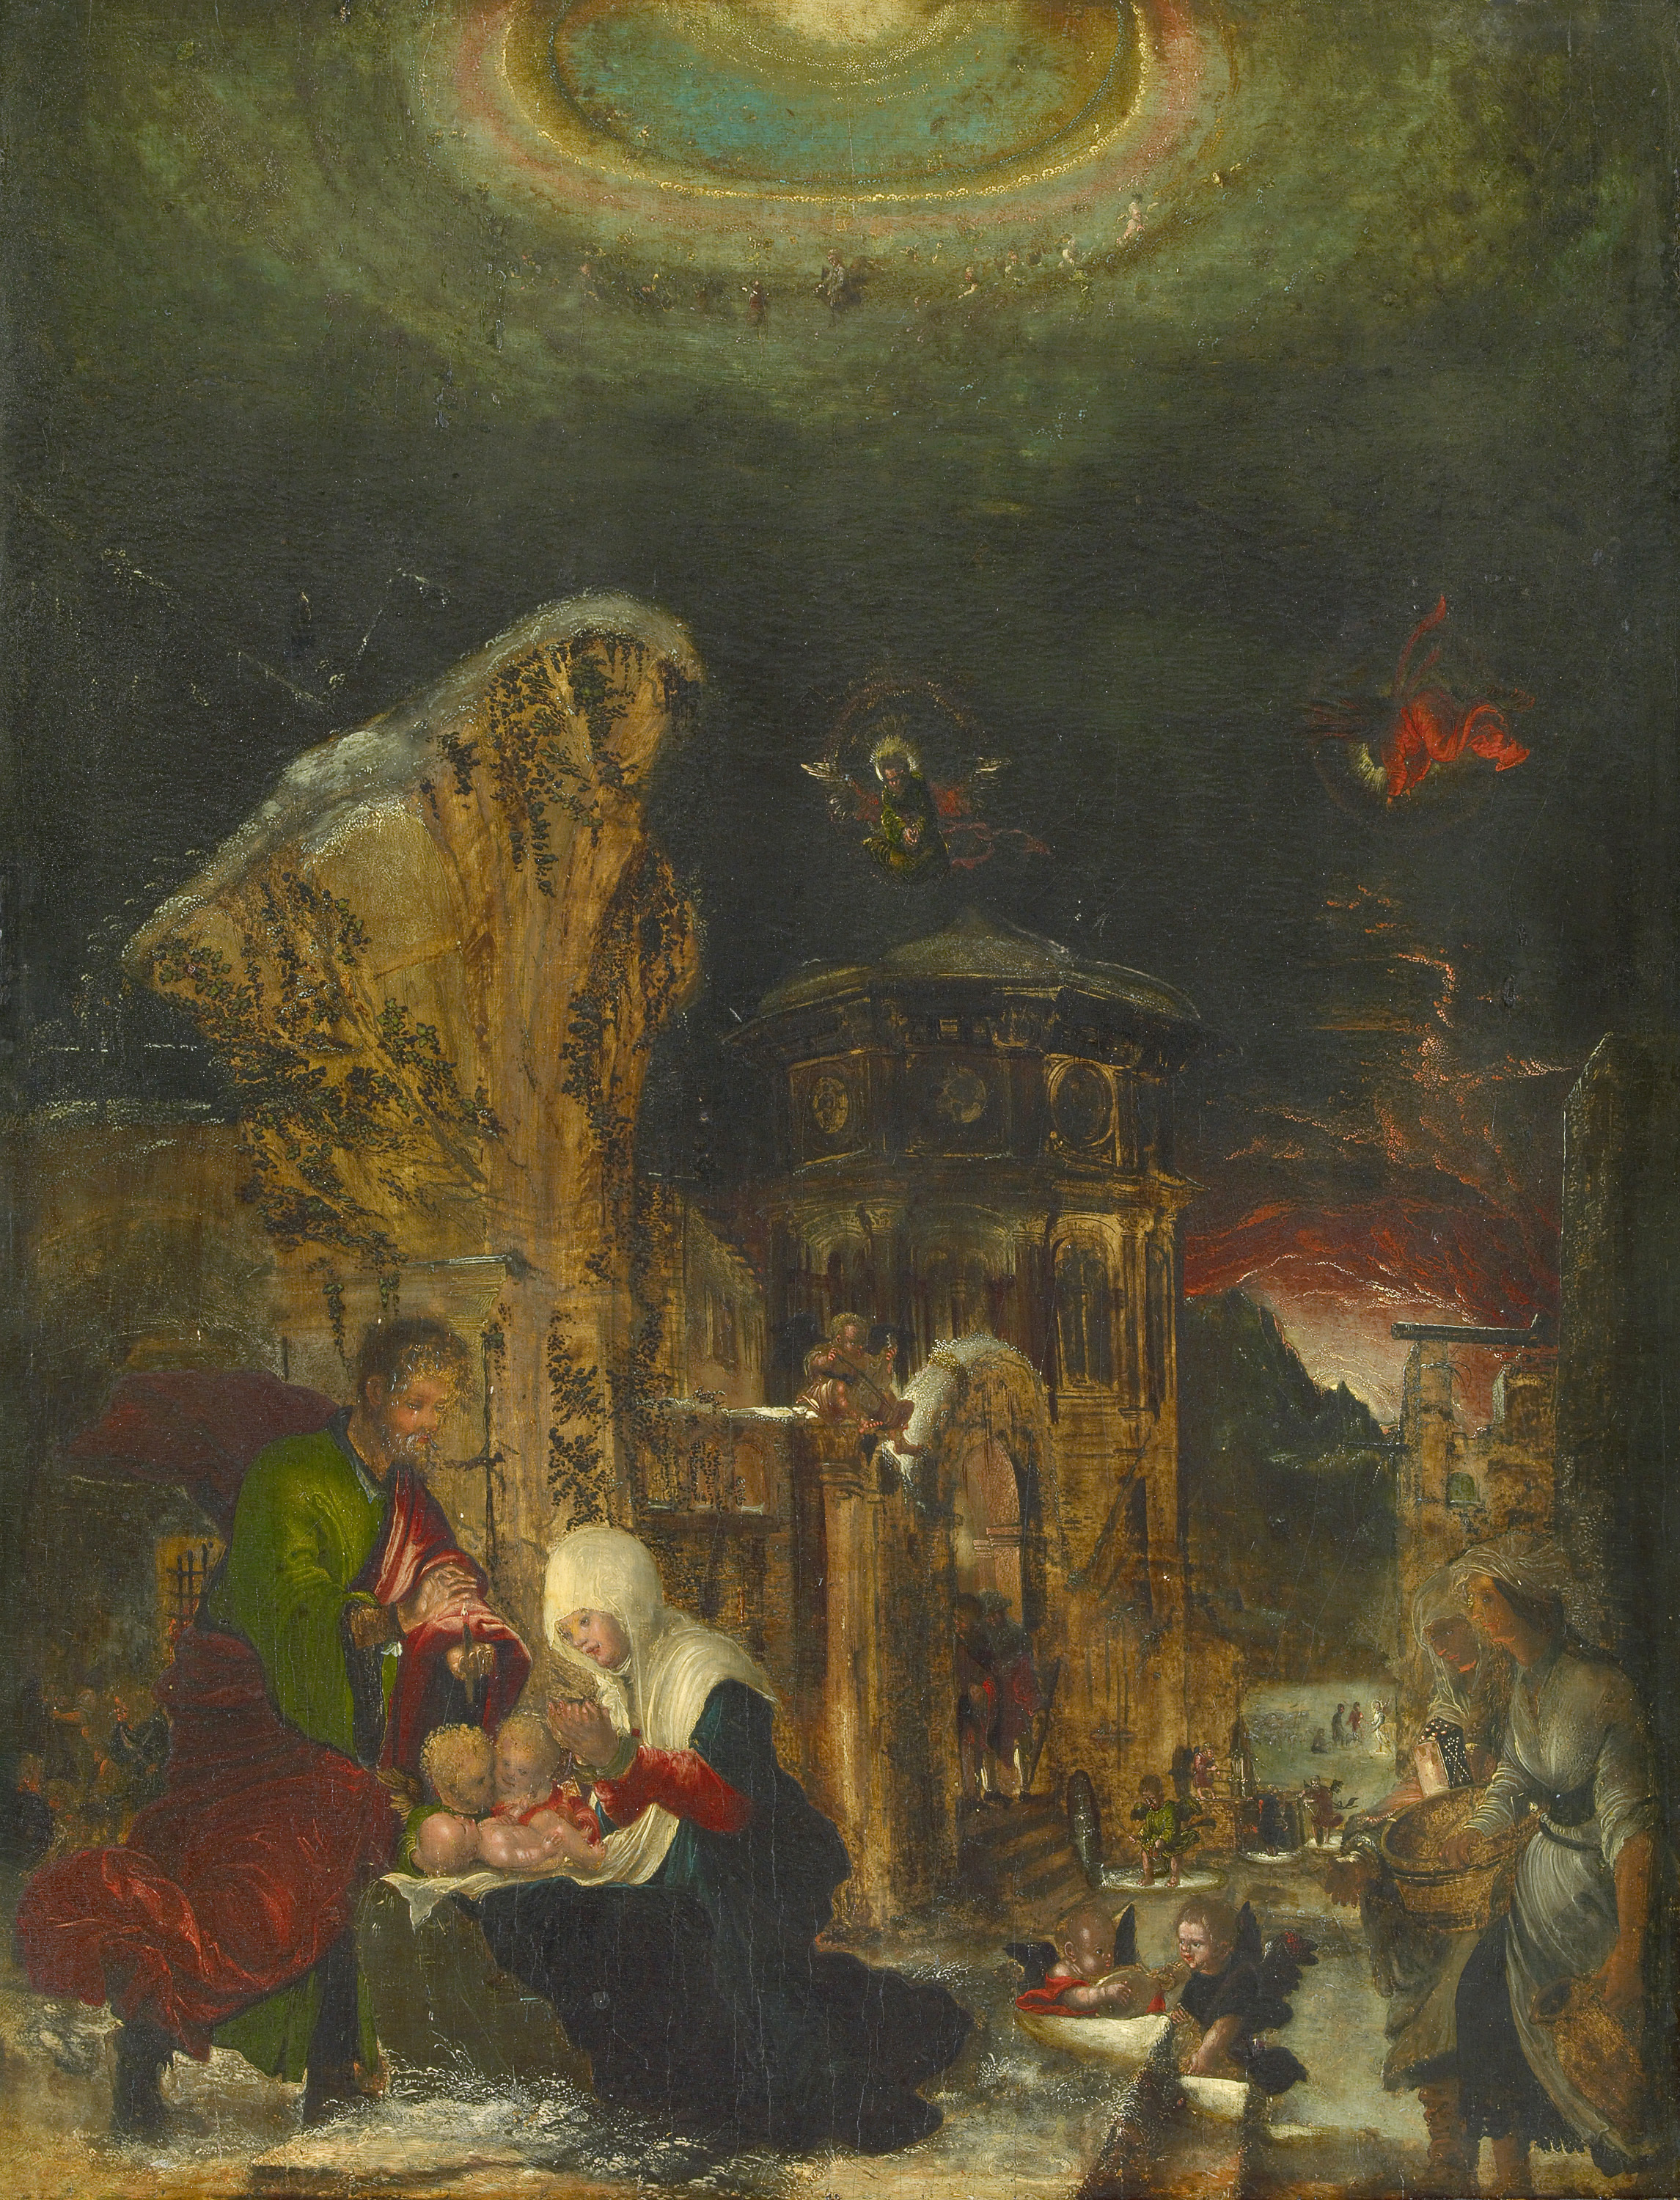 De geboorte van Christus by Albrecht Altdorfer - ca. 1520/25 - 44,5 × 36,1 cm Kunsthistorisches Museum